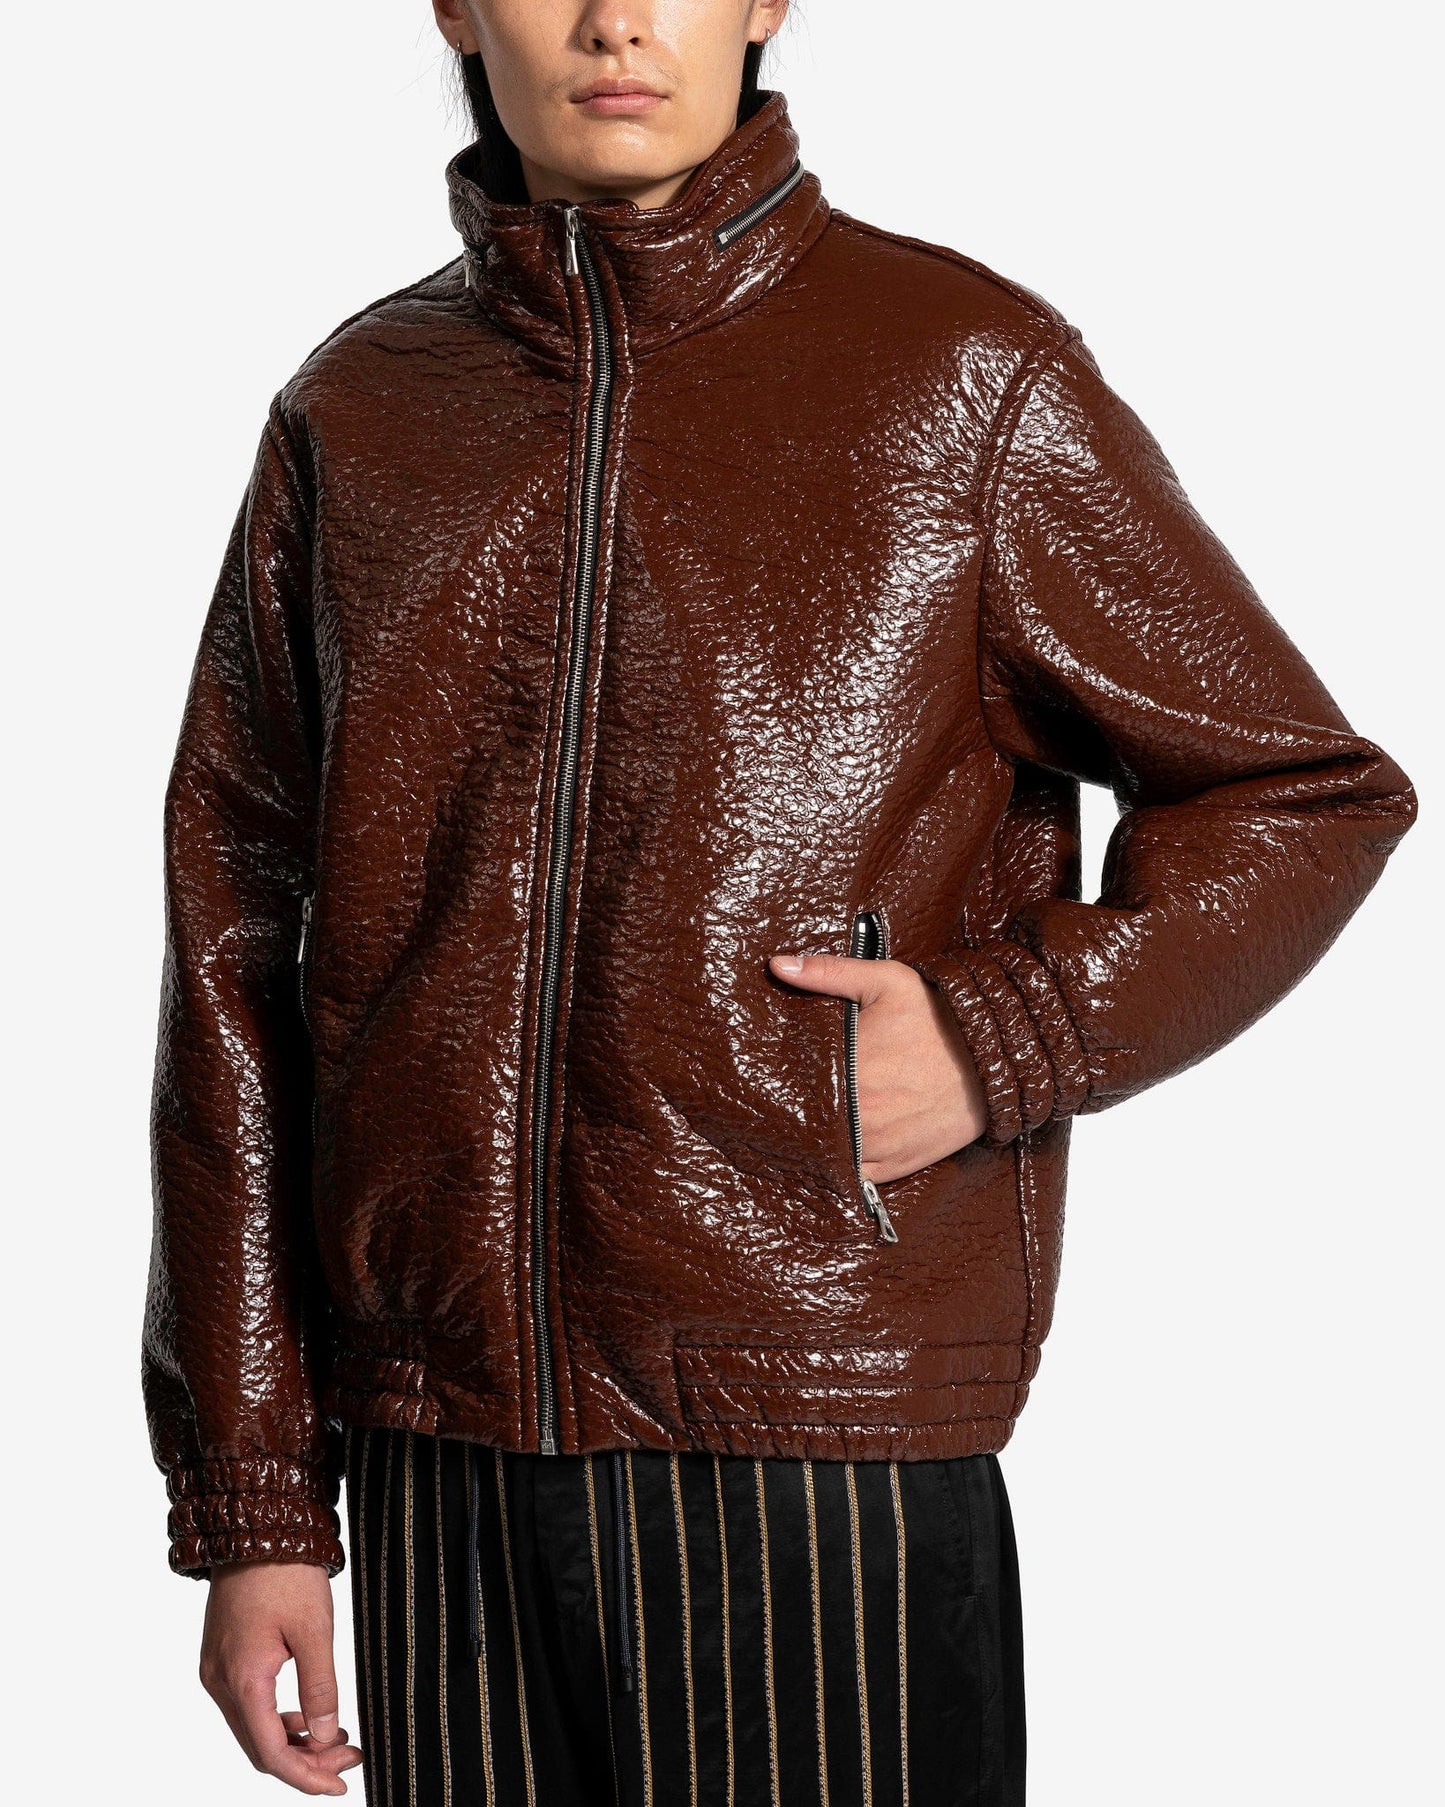 Dries Van Noten Men's Jackets Varn Jacket in Choco